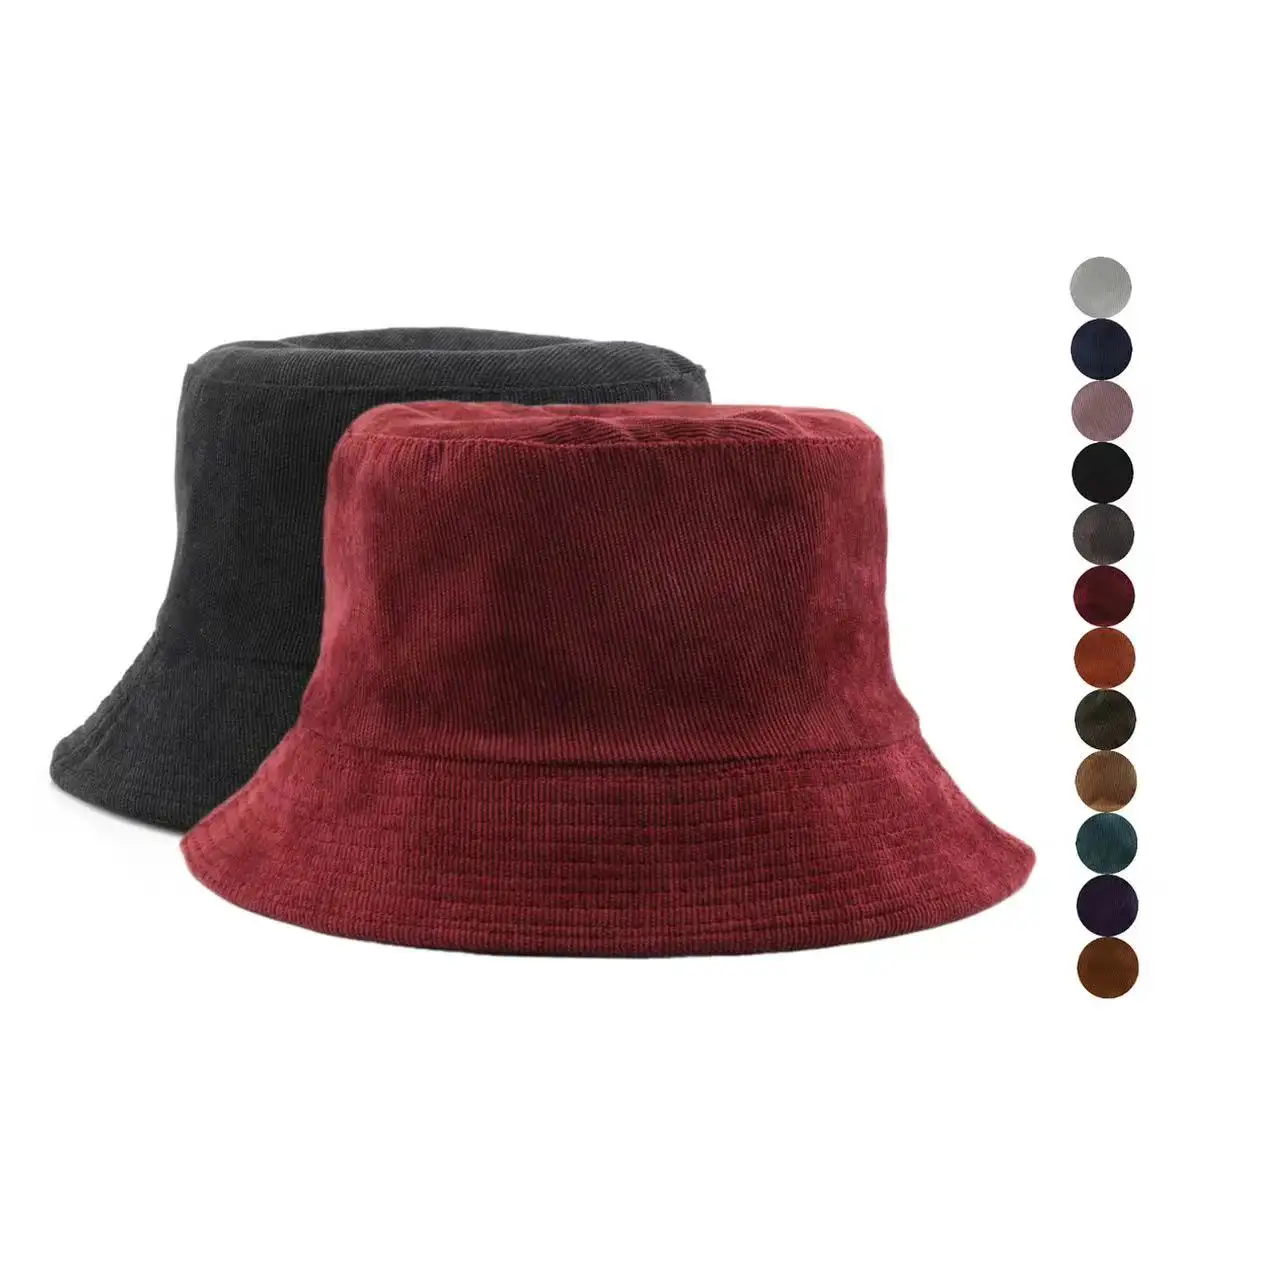 Sombreros de pescador de ala ancha con protección solar, gorras de pescador de pana a la moda, sombreros de cubo para mujeres y hombres